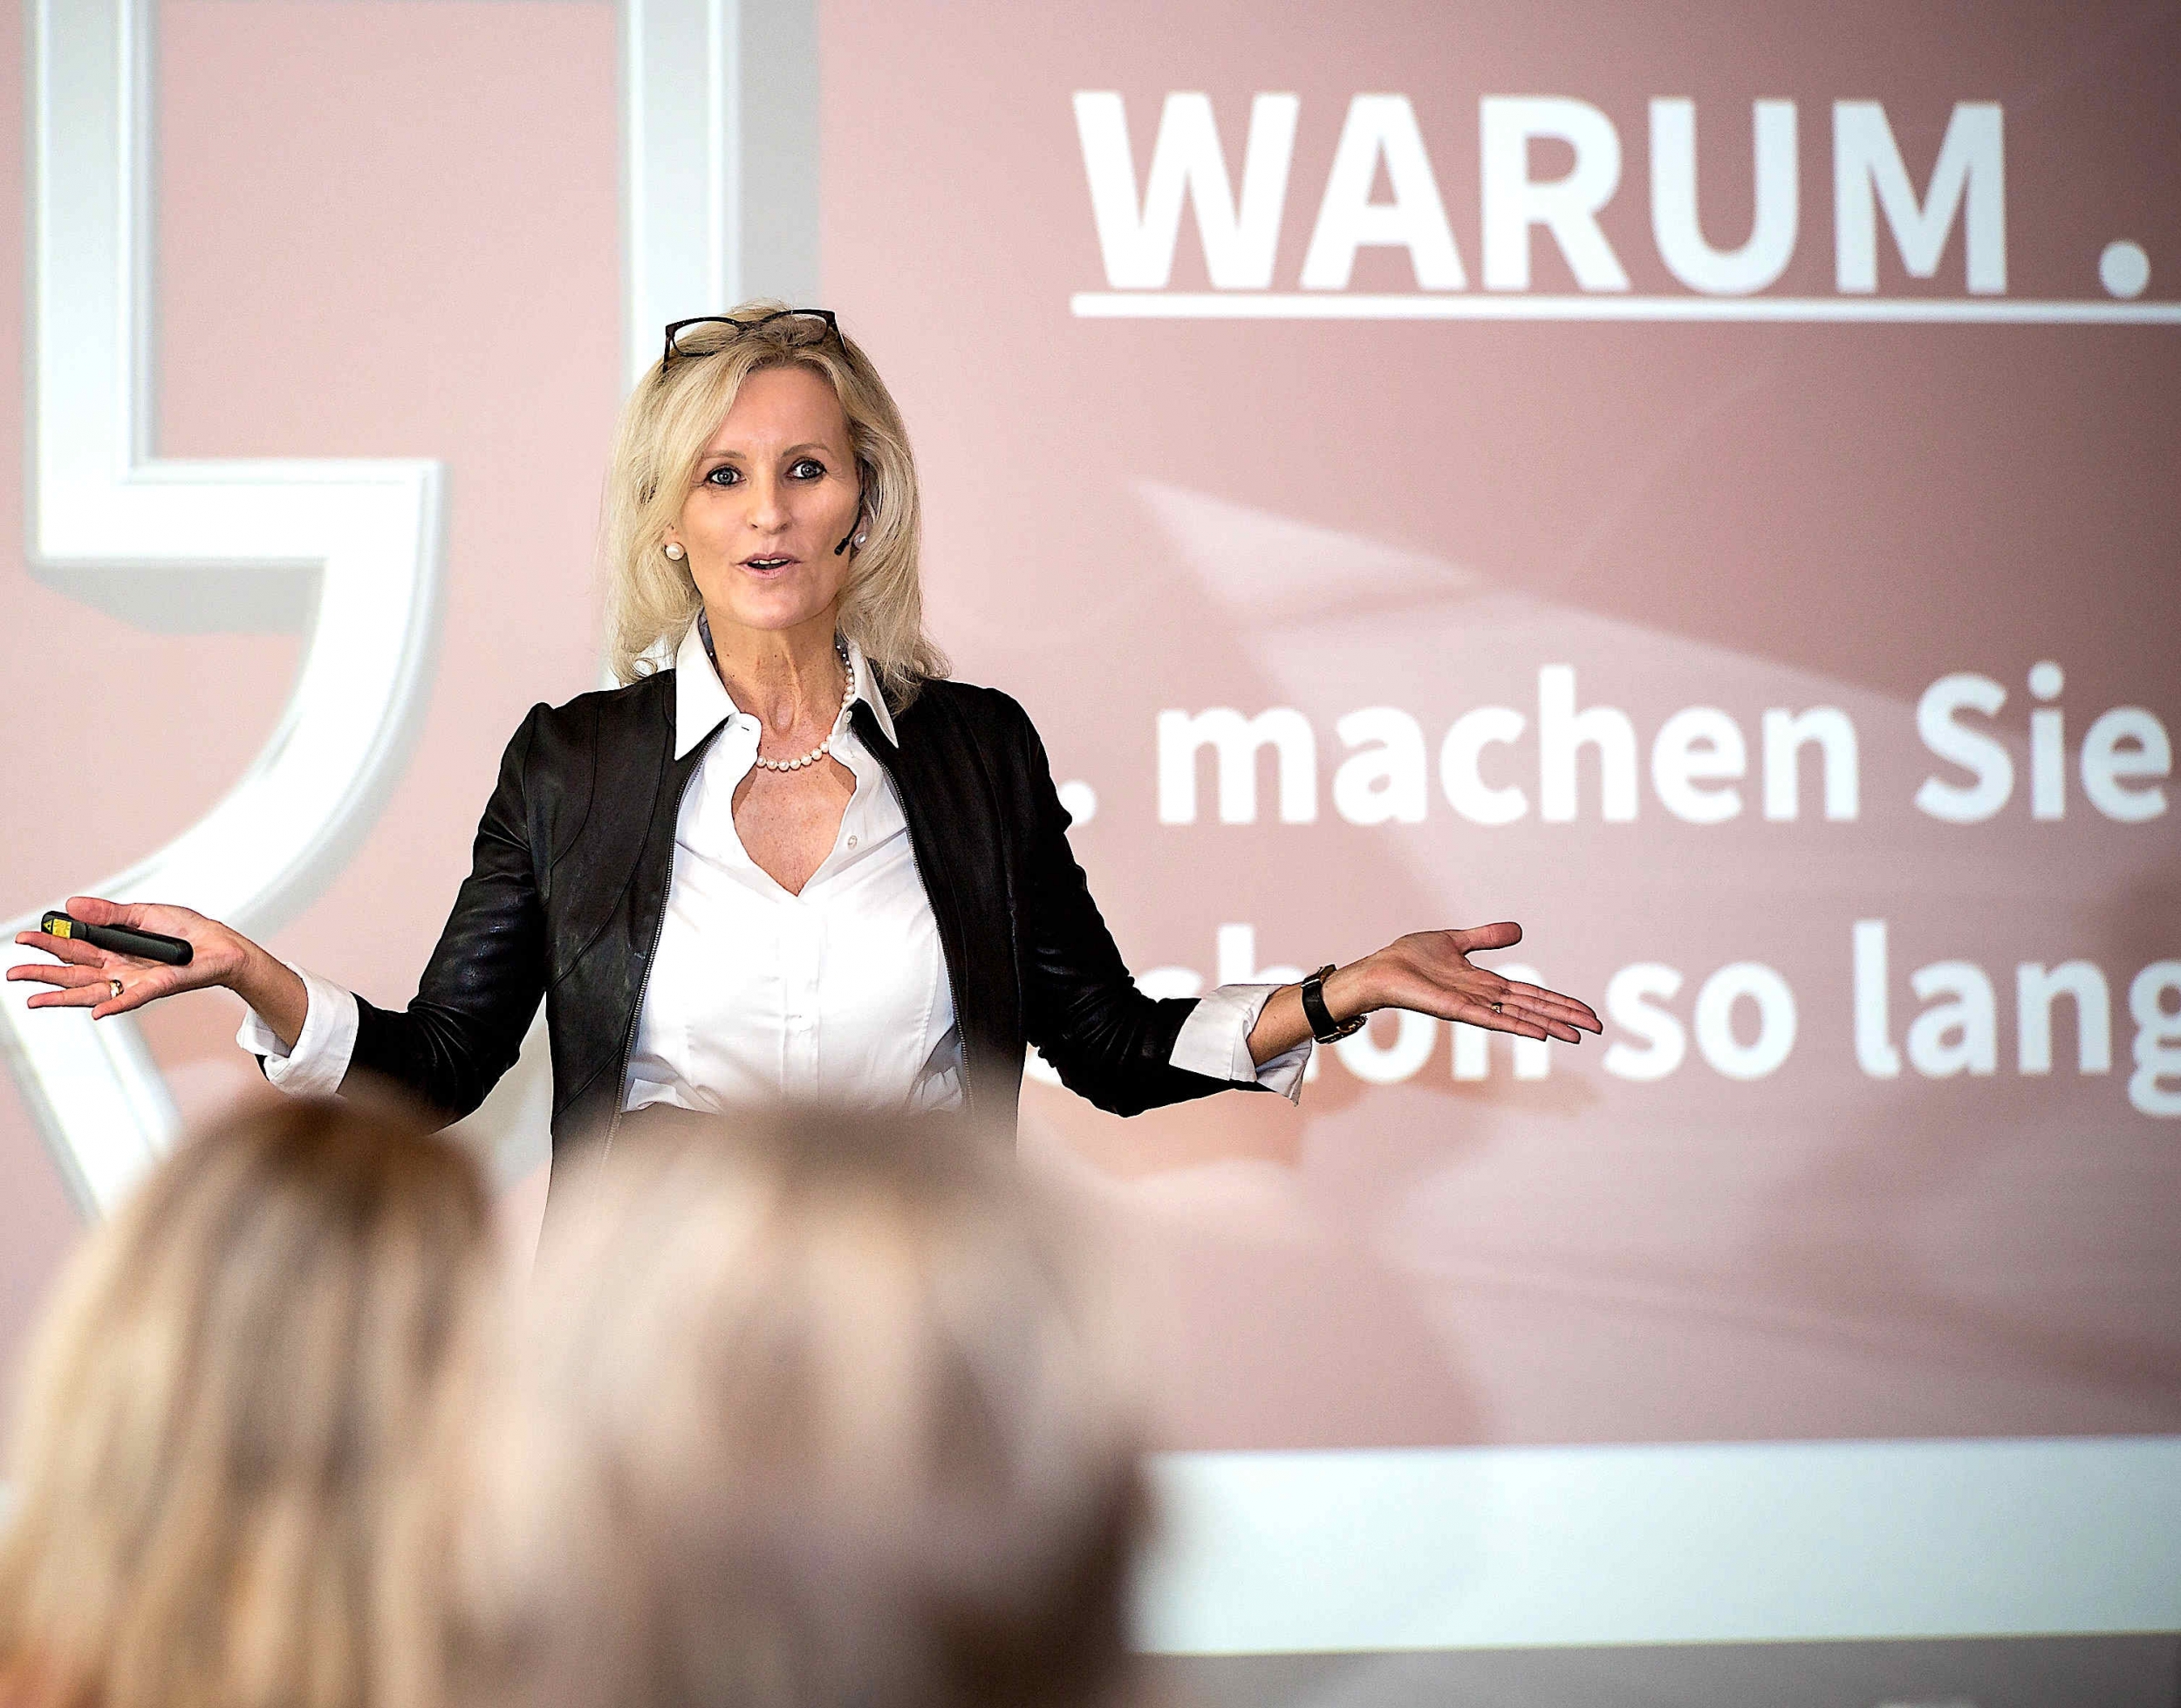 Ulrike Winzer ist Keynote Speakerin, Referentin, IT Expertin, Autorin und Podcasterin. Ihre Themen: Veränderung, Human Resources, Arbeitswelt und Karriere